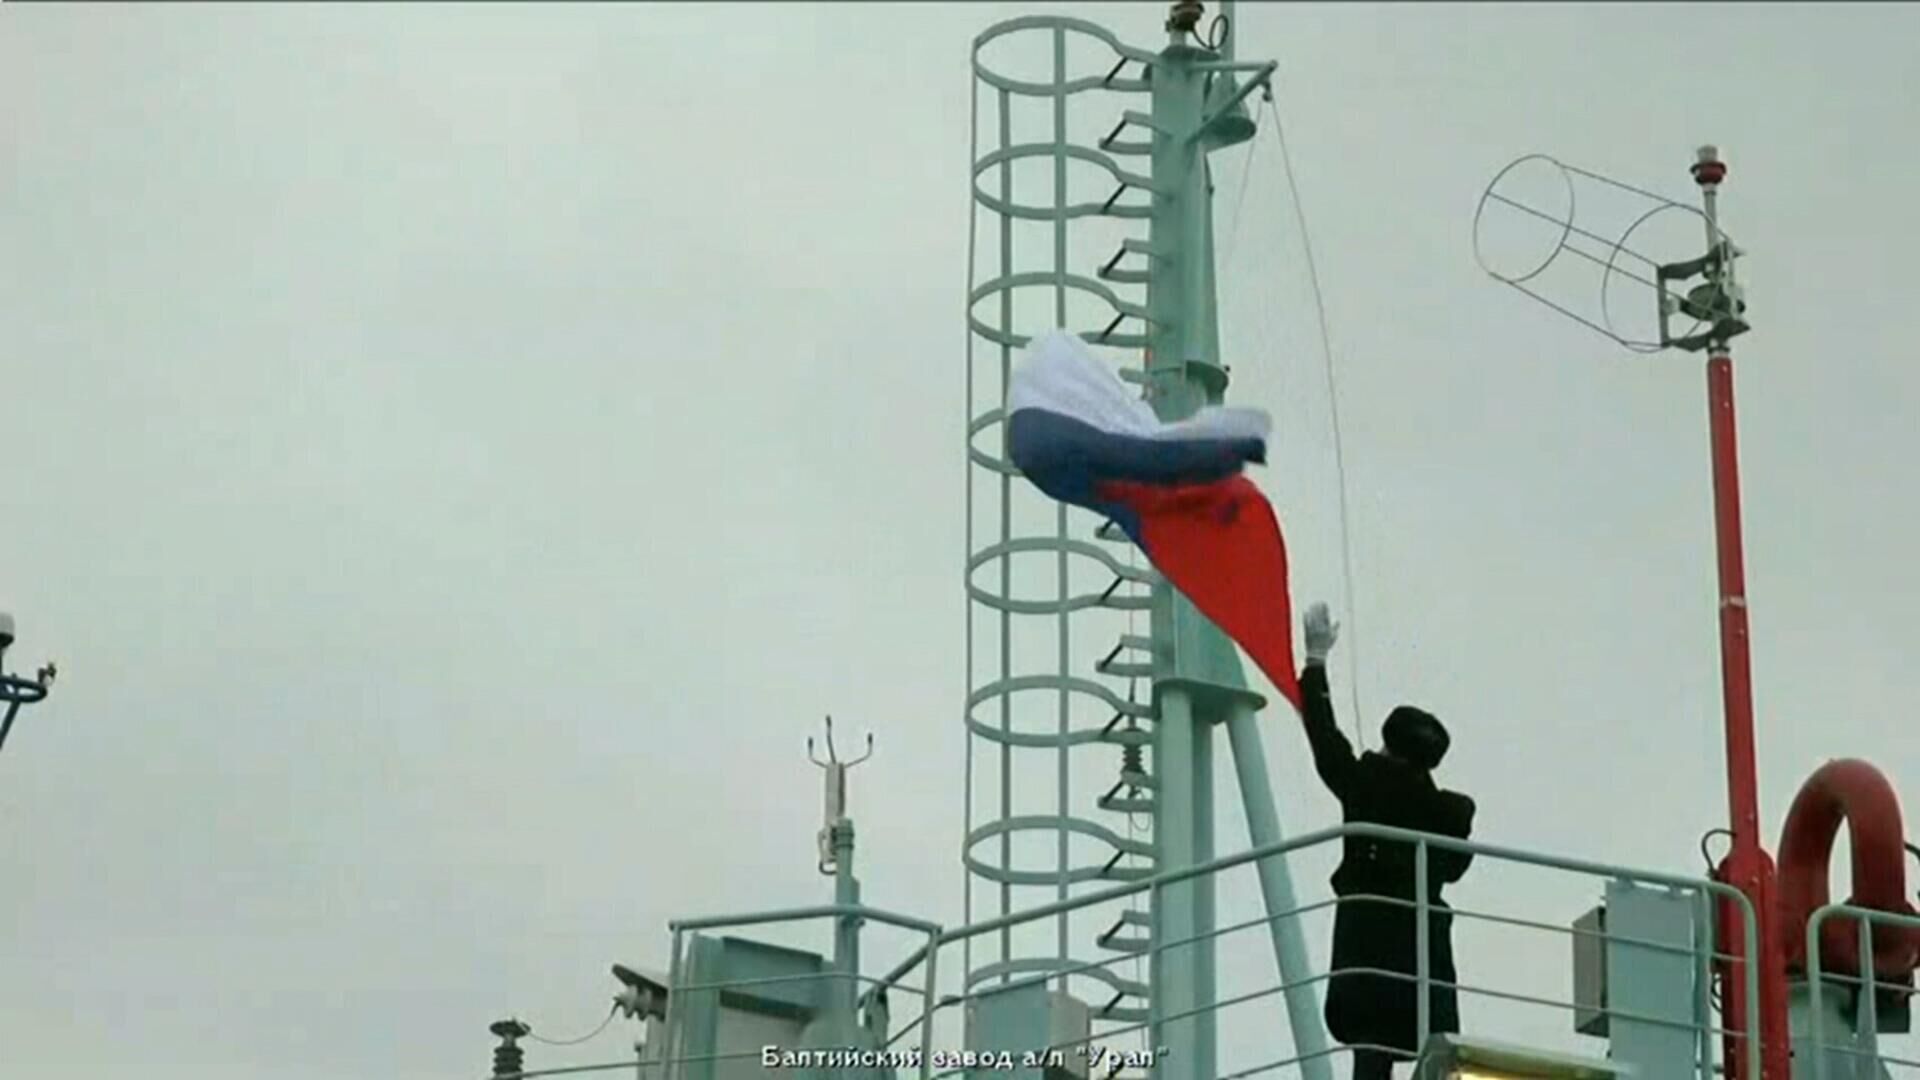 Разрешаю! Путин дал команду поднять флаг на атомном ледоколе Урал - РИА Новости, 1920, 22.11.2022